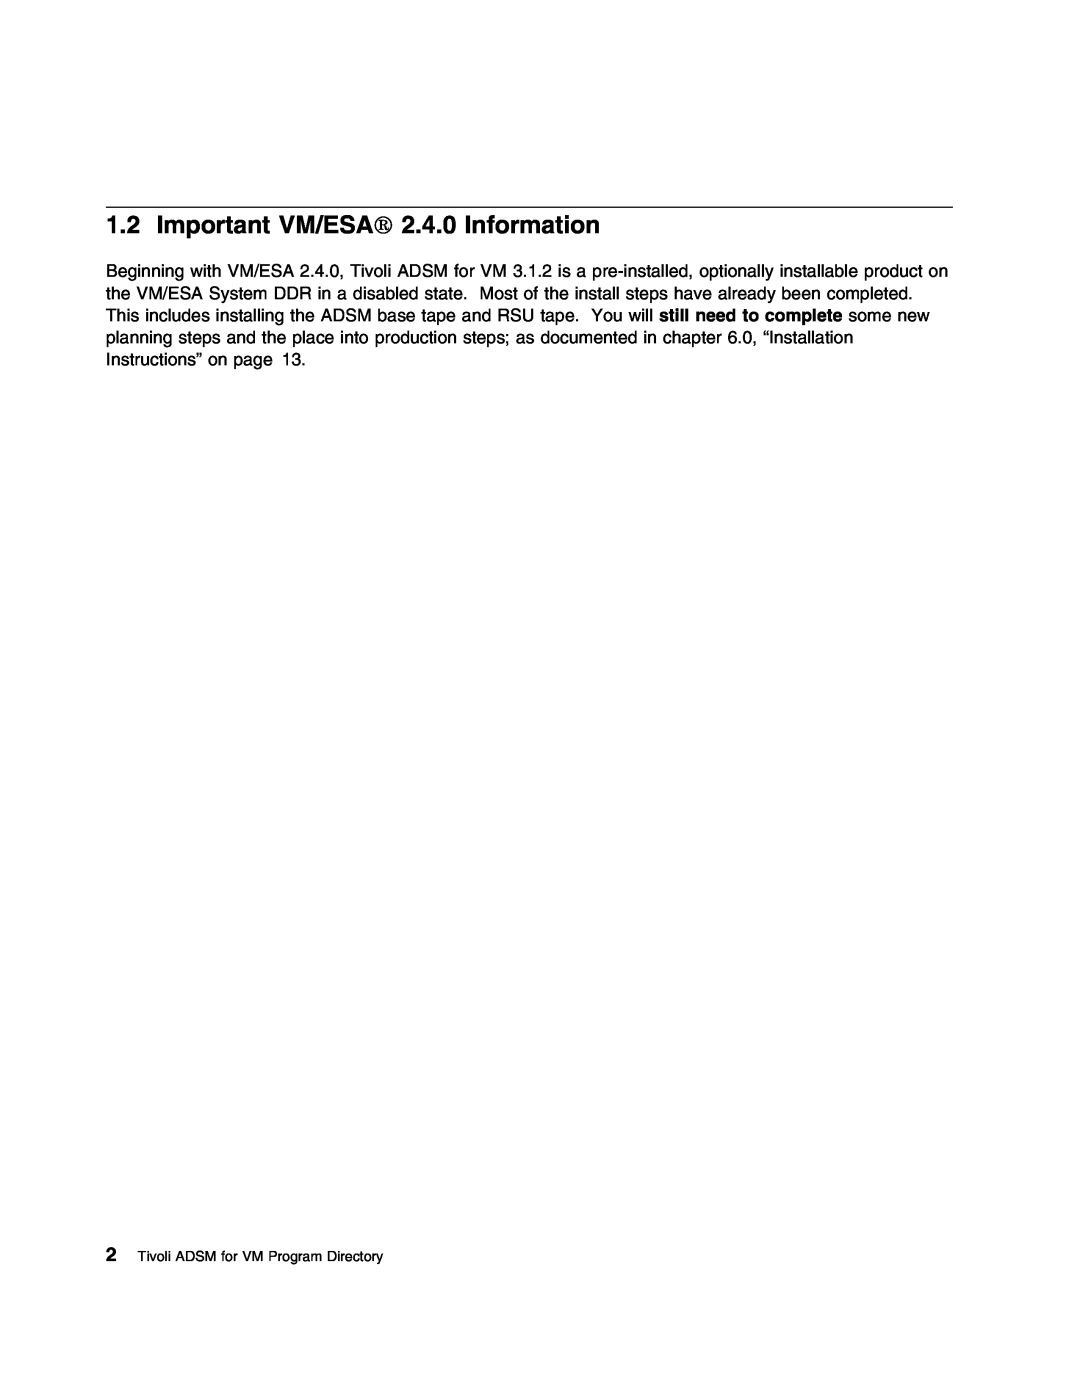 IBM 5697-VM3 manual Important VM/ESA 2.4.0 Information, Tivoli ADSM for VM Program Directory 